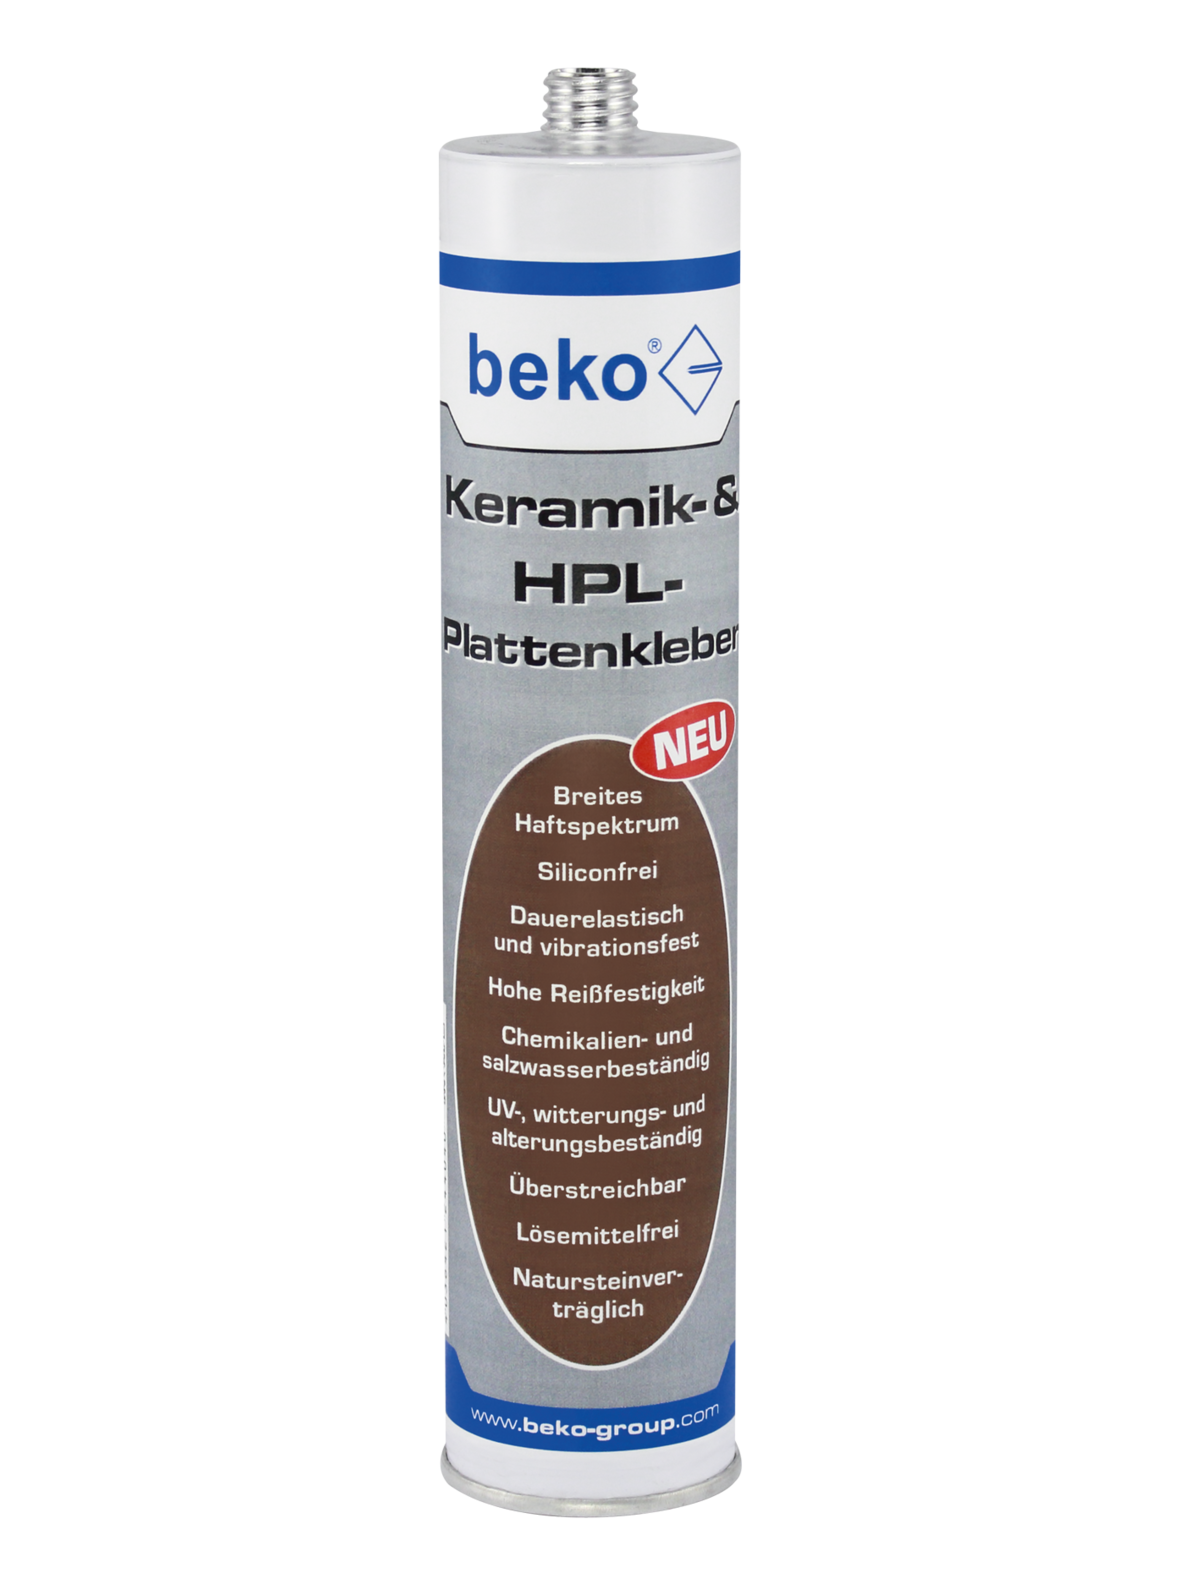 Beko Keramik- & HPL-Plattenkleber 310ml schwarz